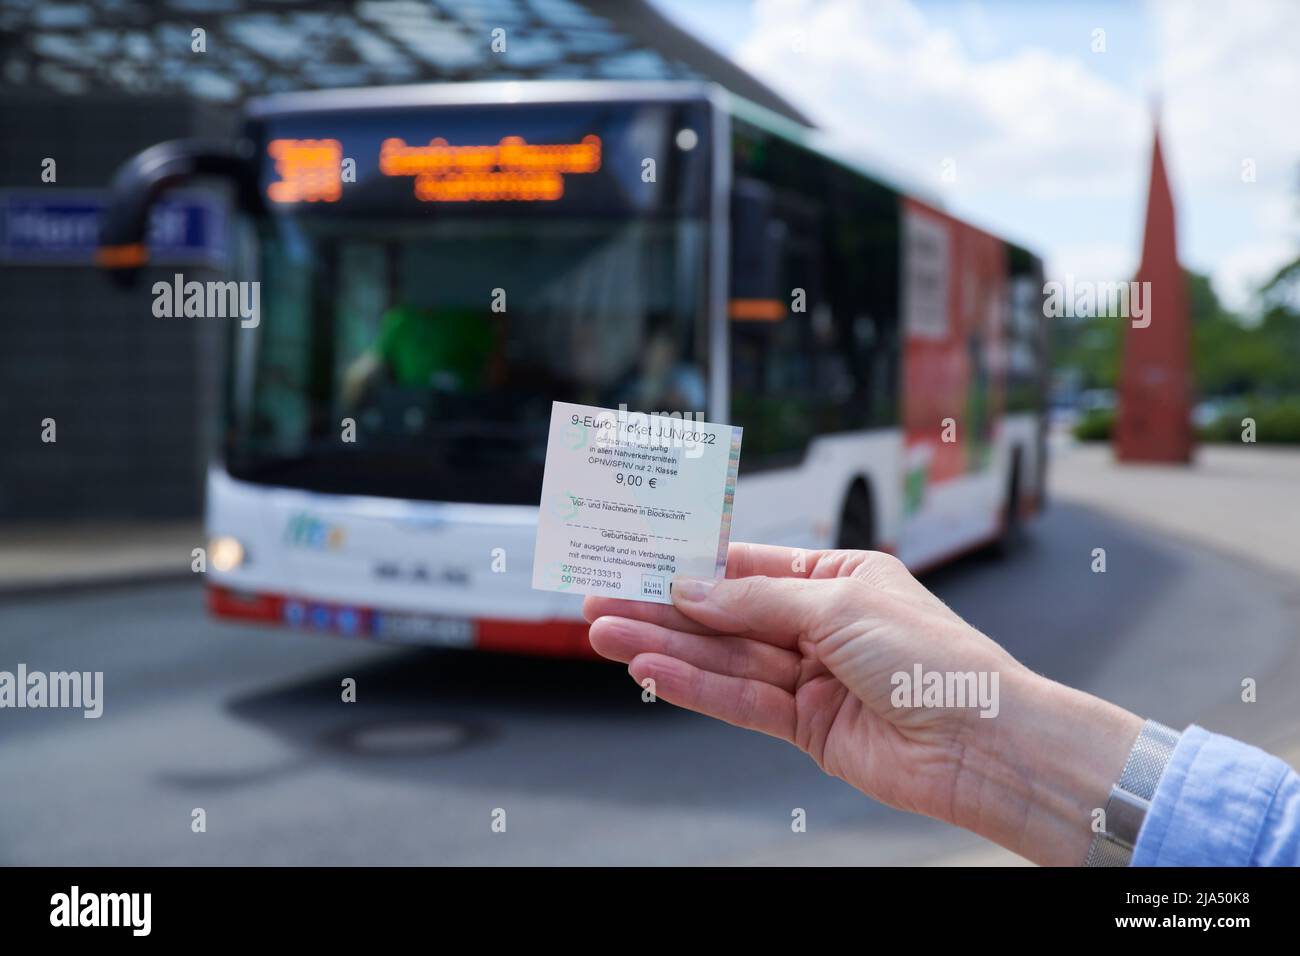 Einfuehrung des 9 EURO Tickets zur Entlastung der Buergerinnen und -Buerger fuer die hohen Spirtkosten. Eine weibliche Hand haelt das 9-EUR-Ticket. Im Stock Photo